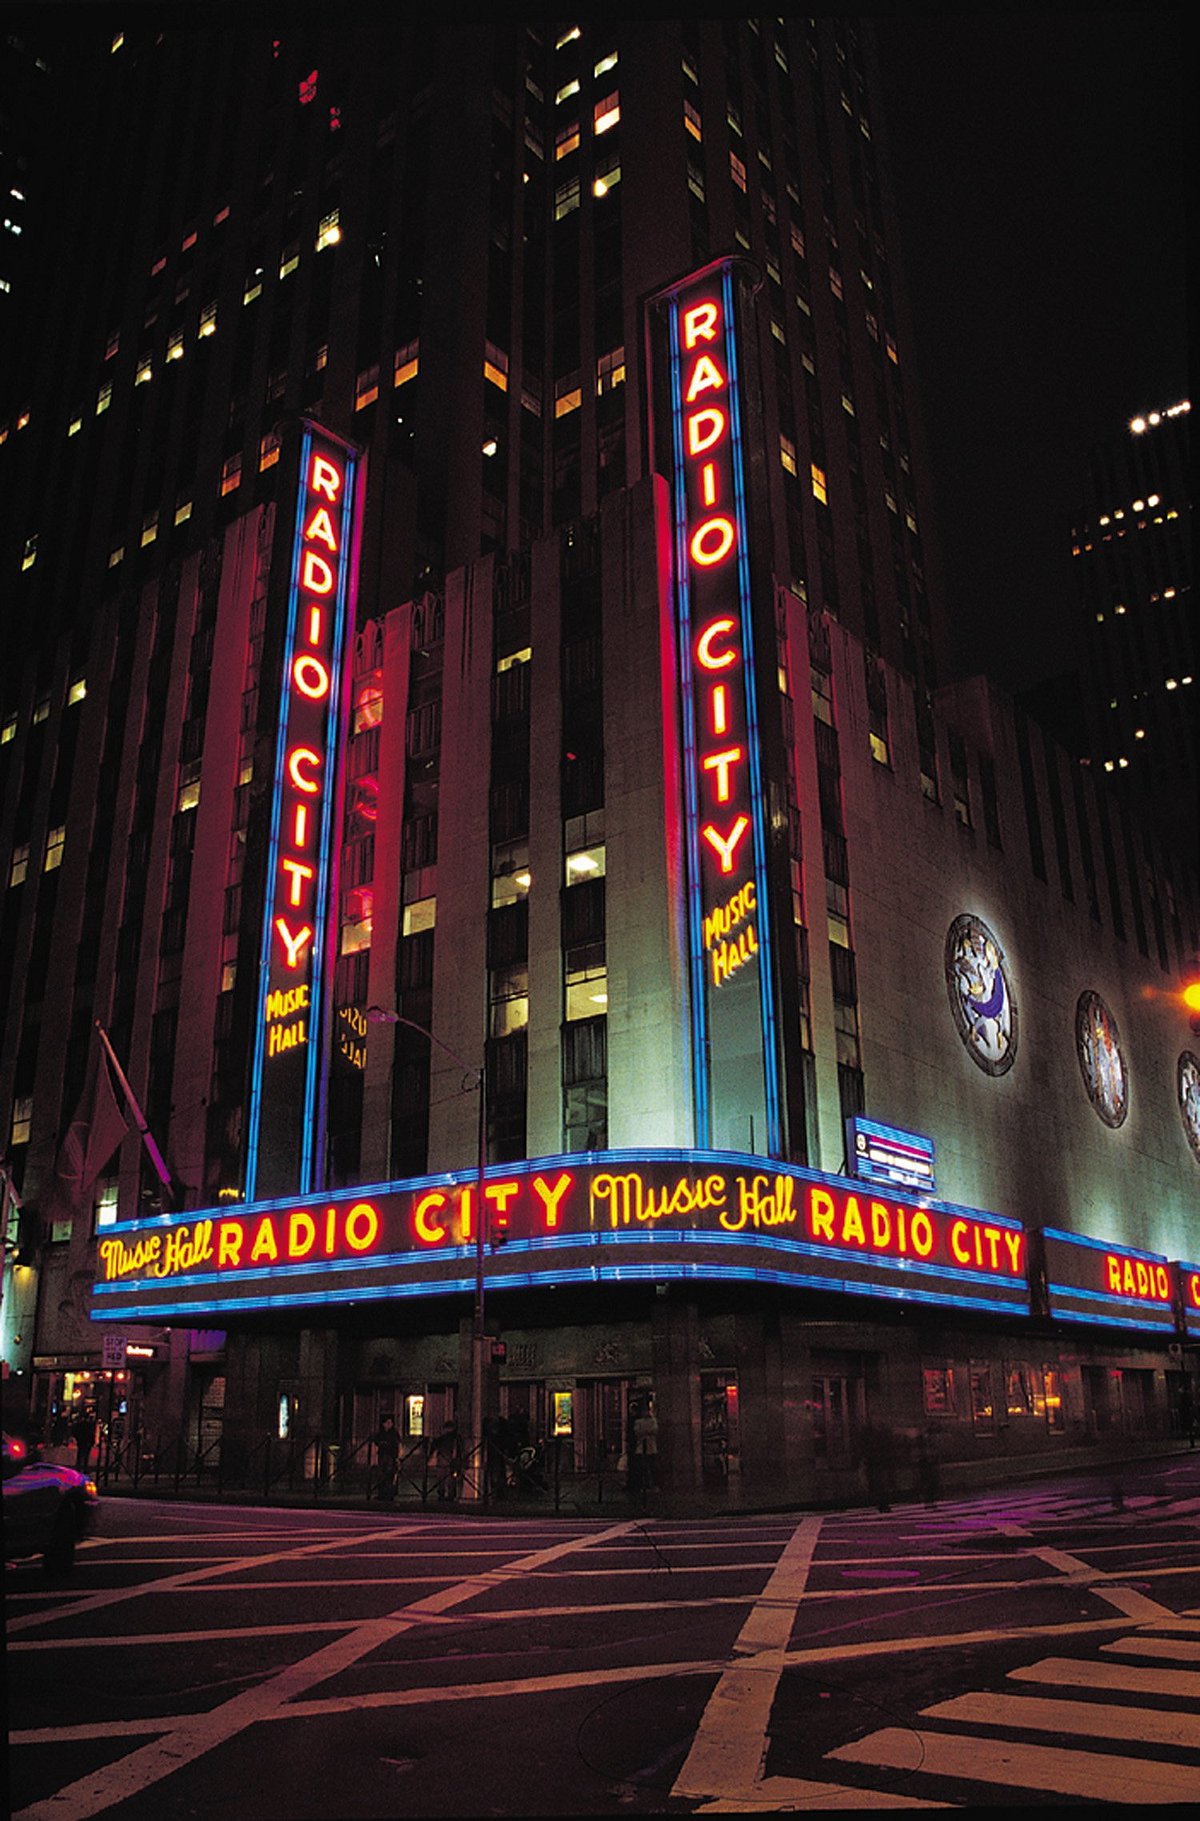 radio city music hall, Radio City Music Hall in New York